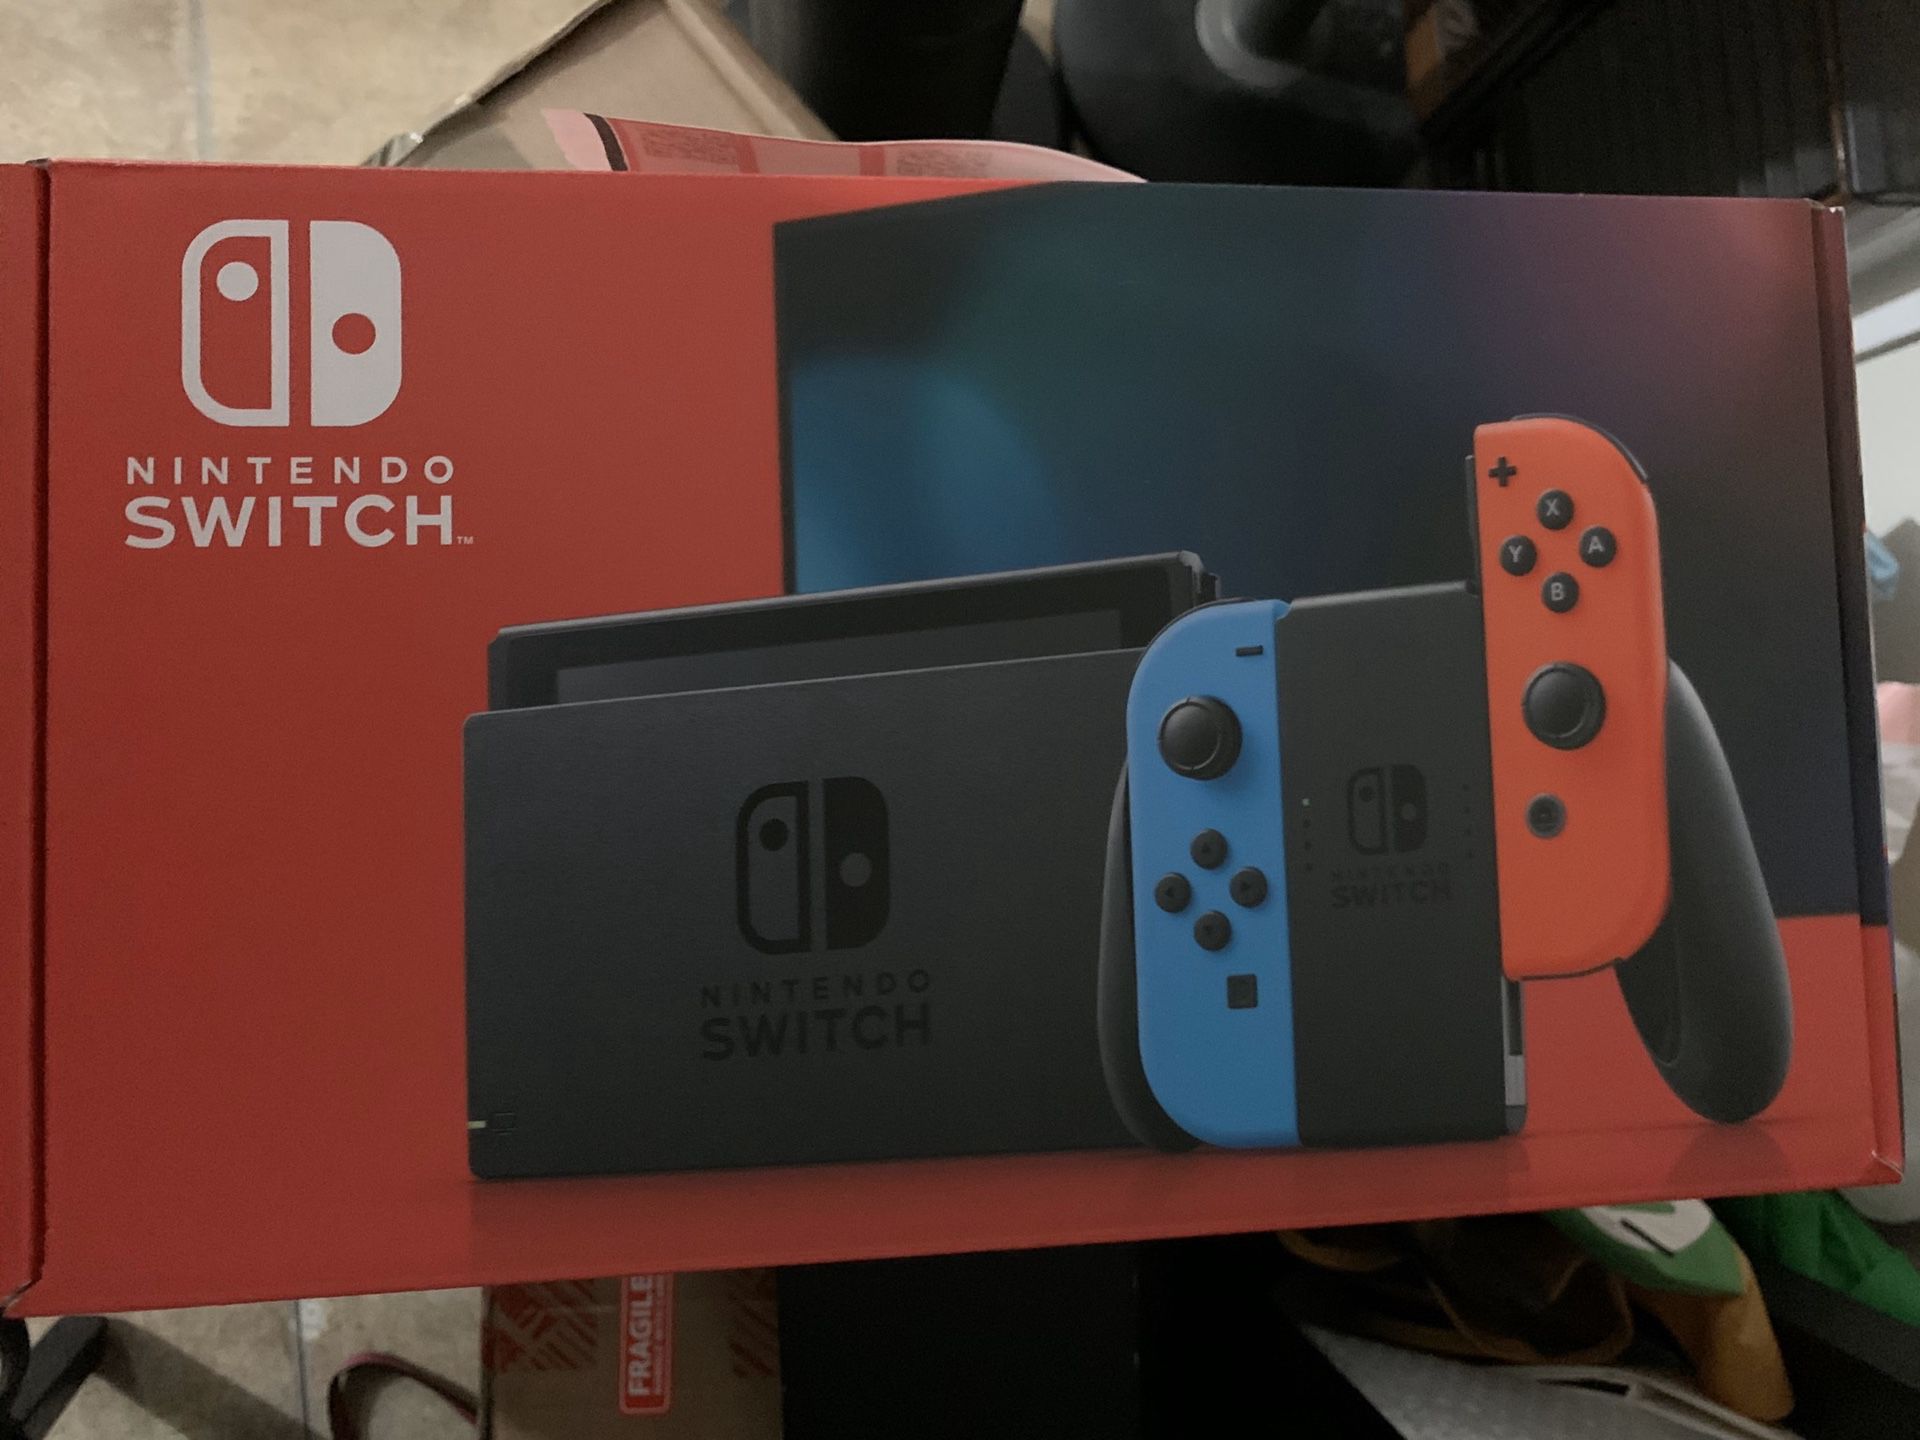 Nintendo switch latest edition sealed/unopened